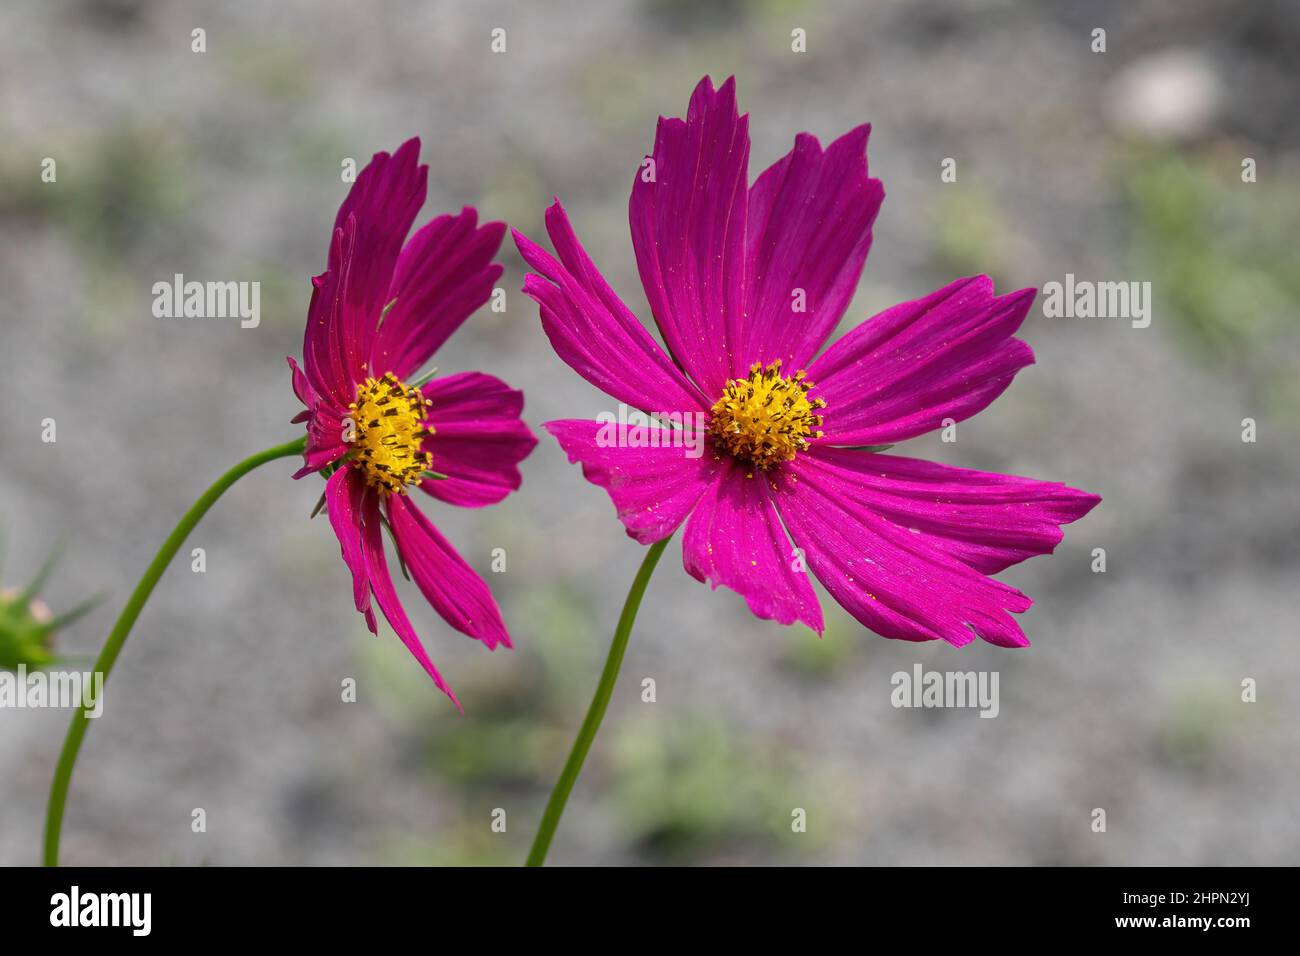 Garden cosmos flower closeup (Cosmos bipinnatus) - Florida, USA Stock Photo